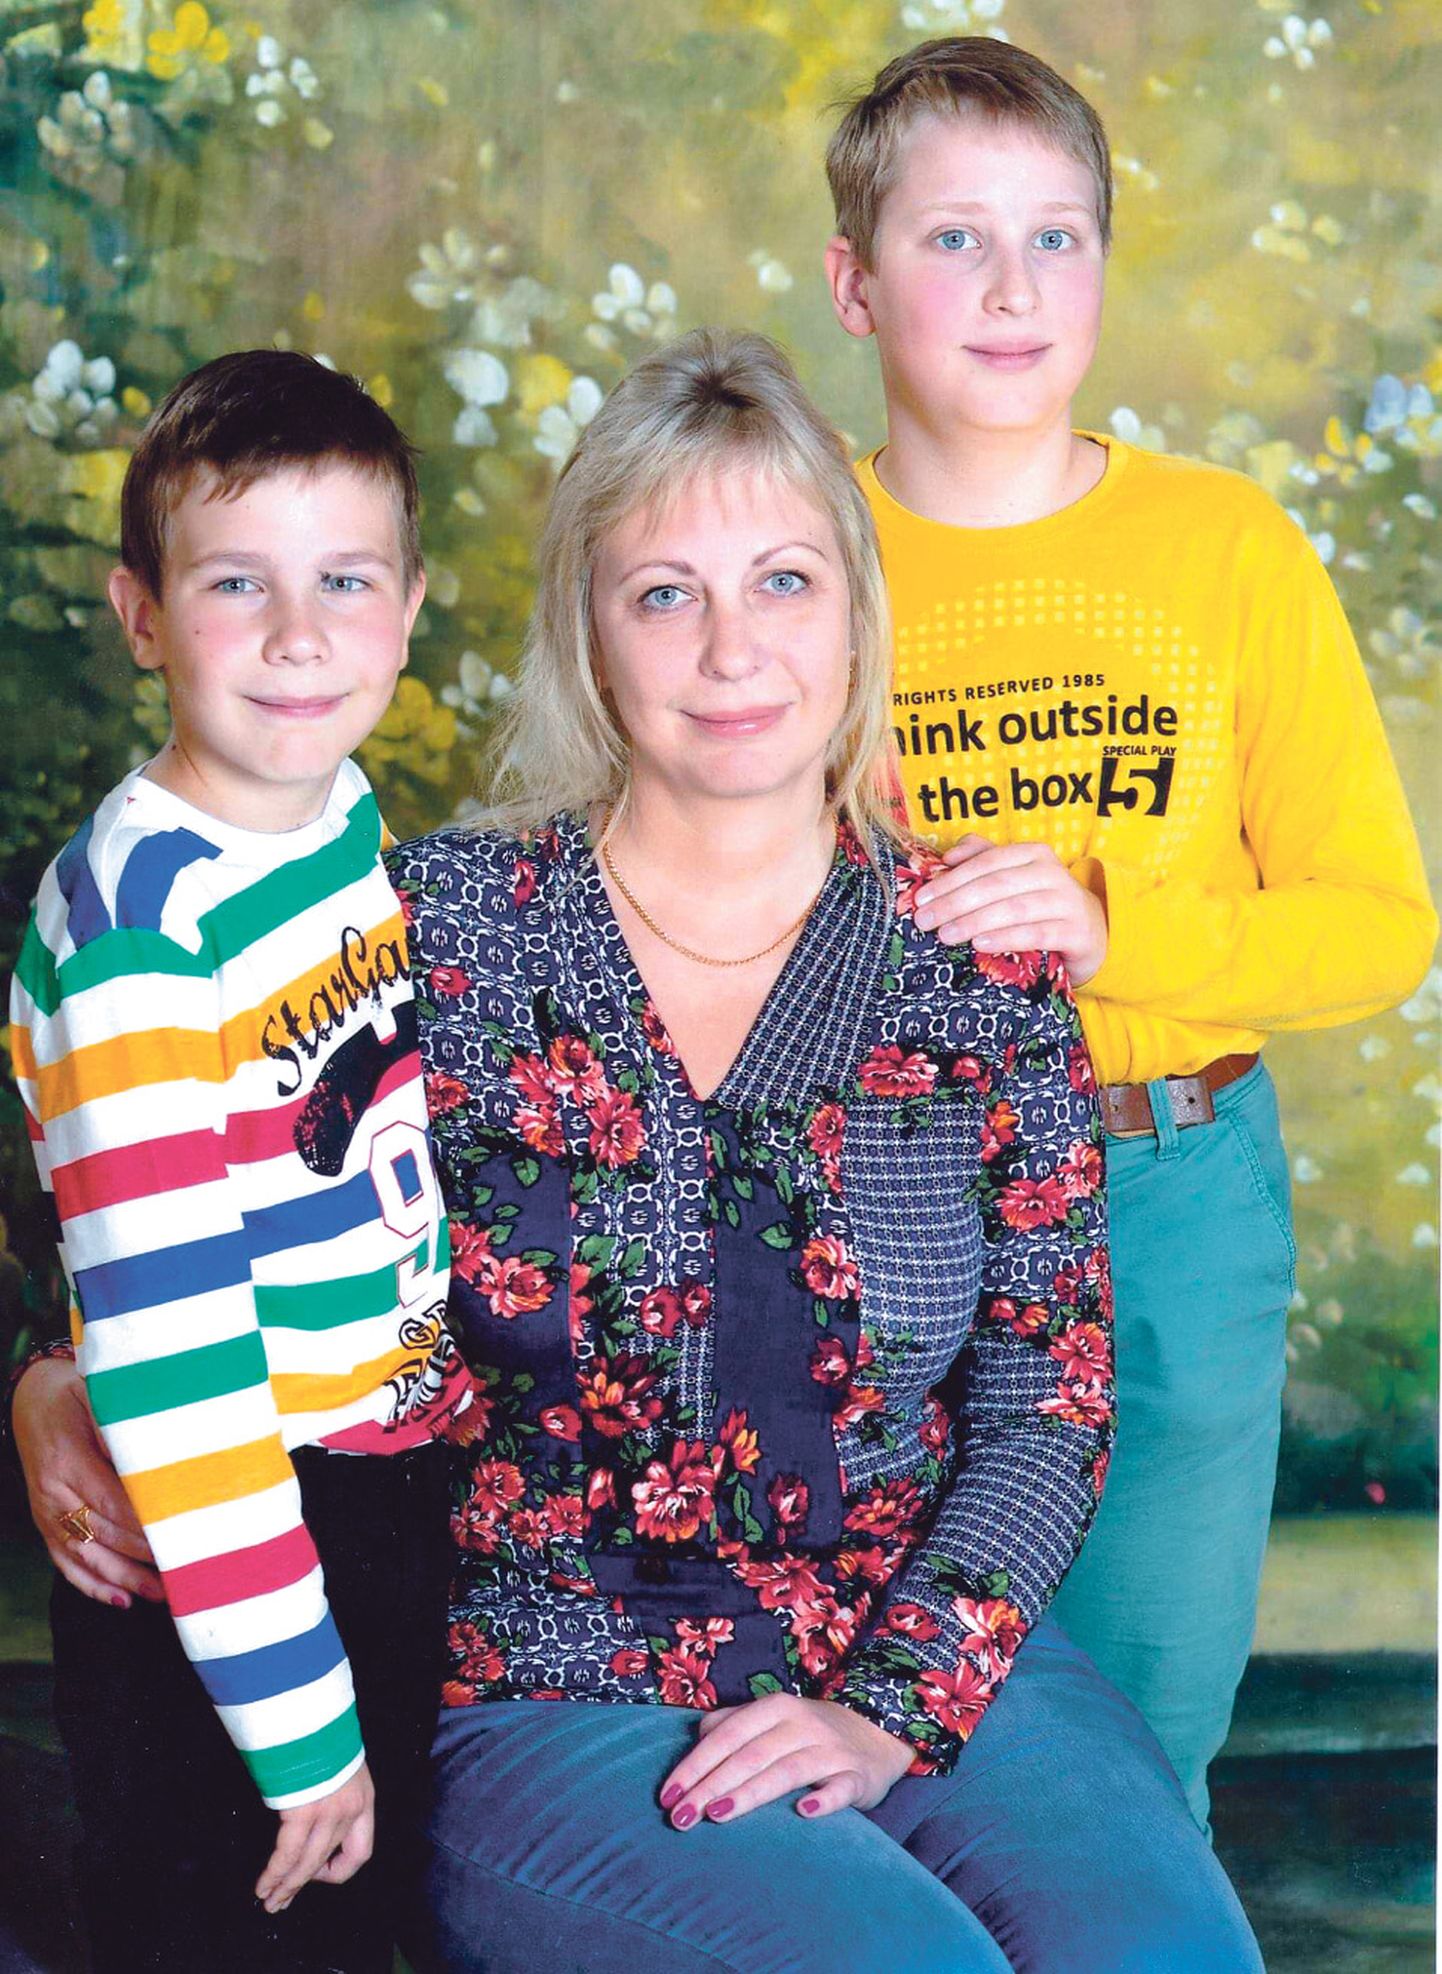 "Мама года 2019" Ольга Портнова считает, что главный секрет воспитания хороших детей - доверять и уважать их выбор. А поводов гордиться своими сыновьями у нее много.